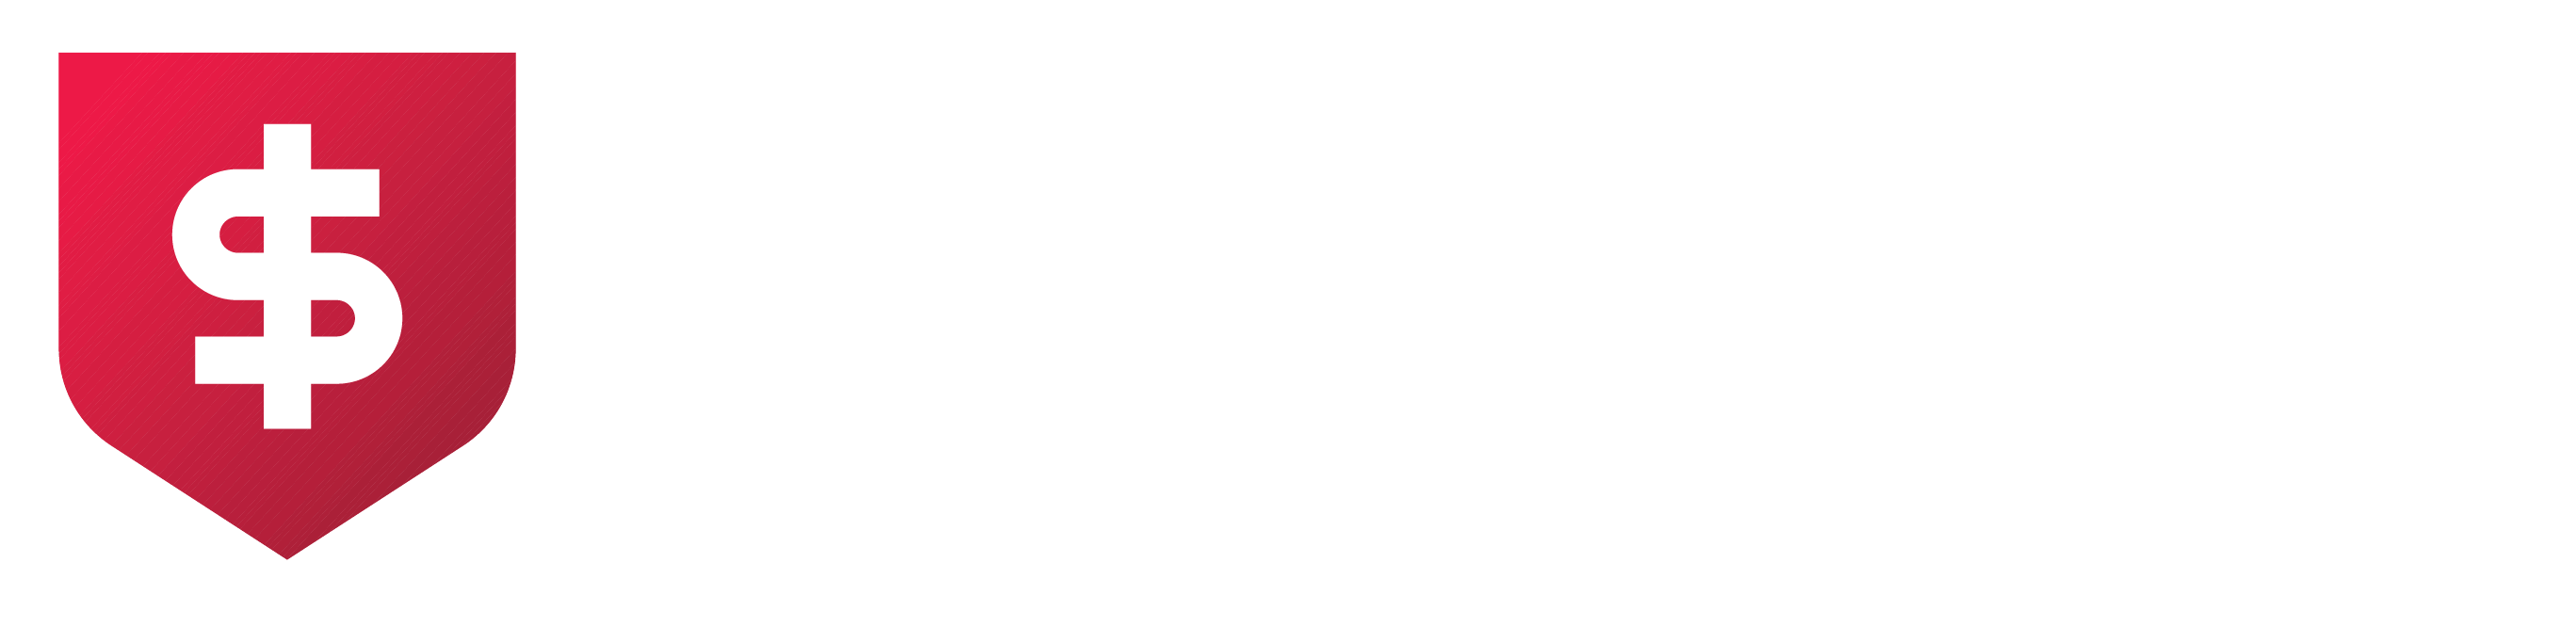 3-year TV price guarantee badge